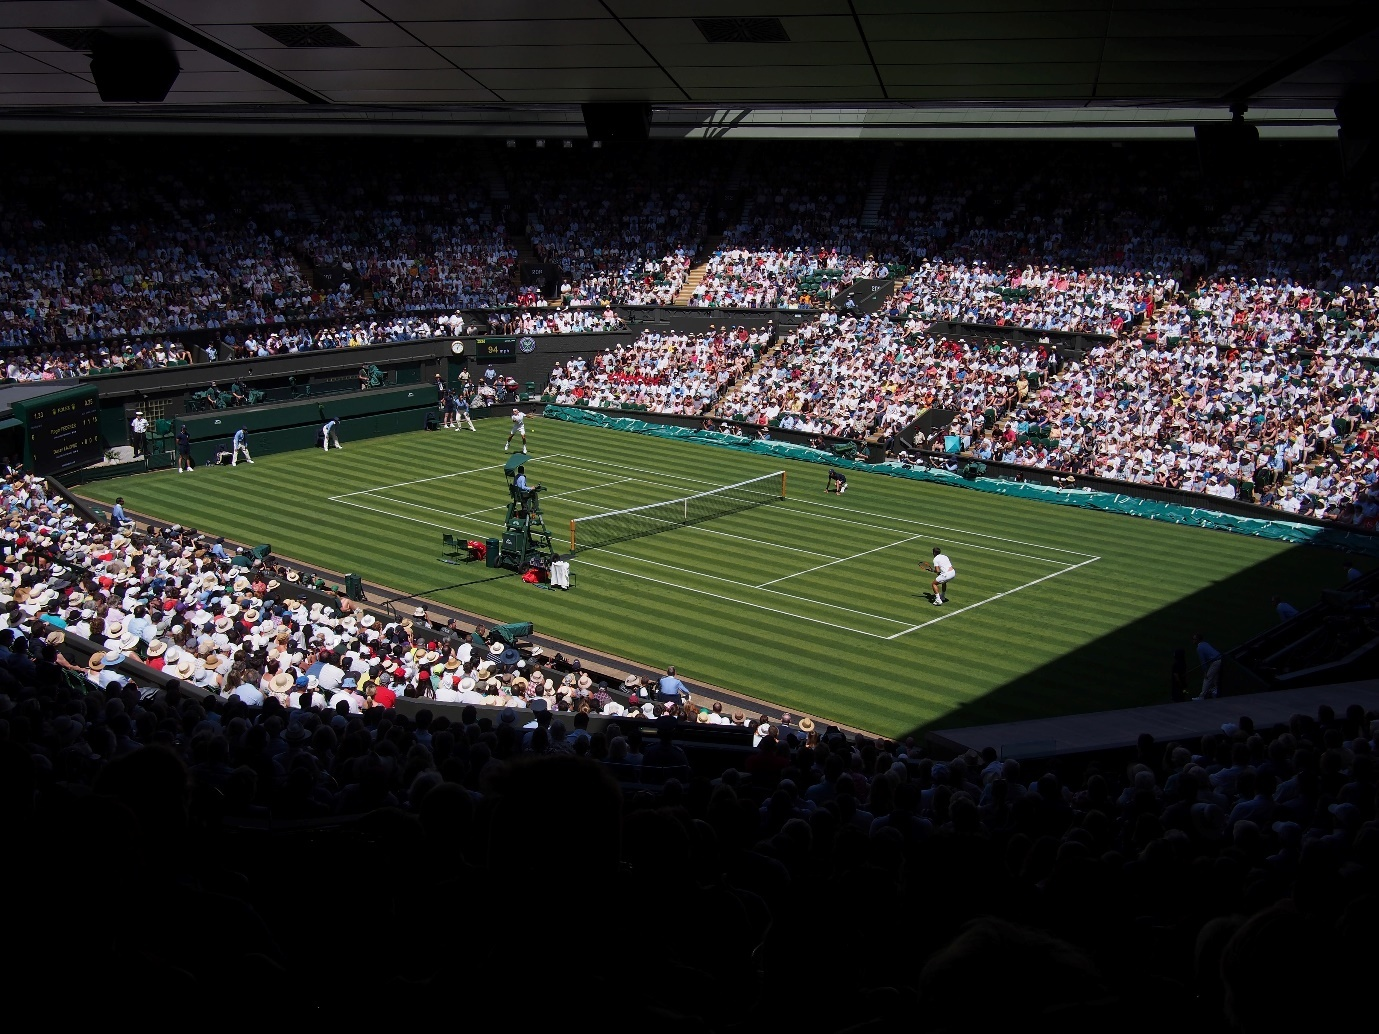 A tennis match underway.